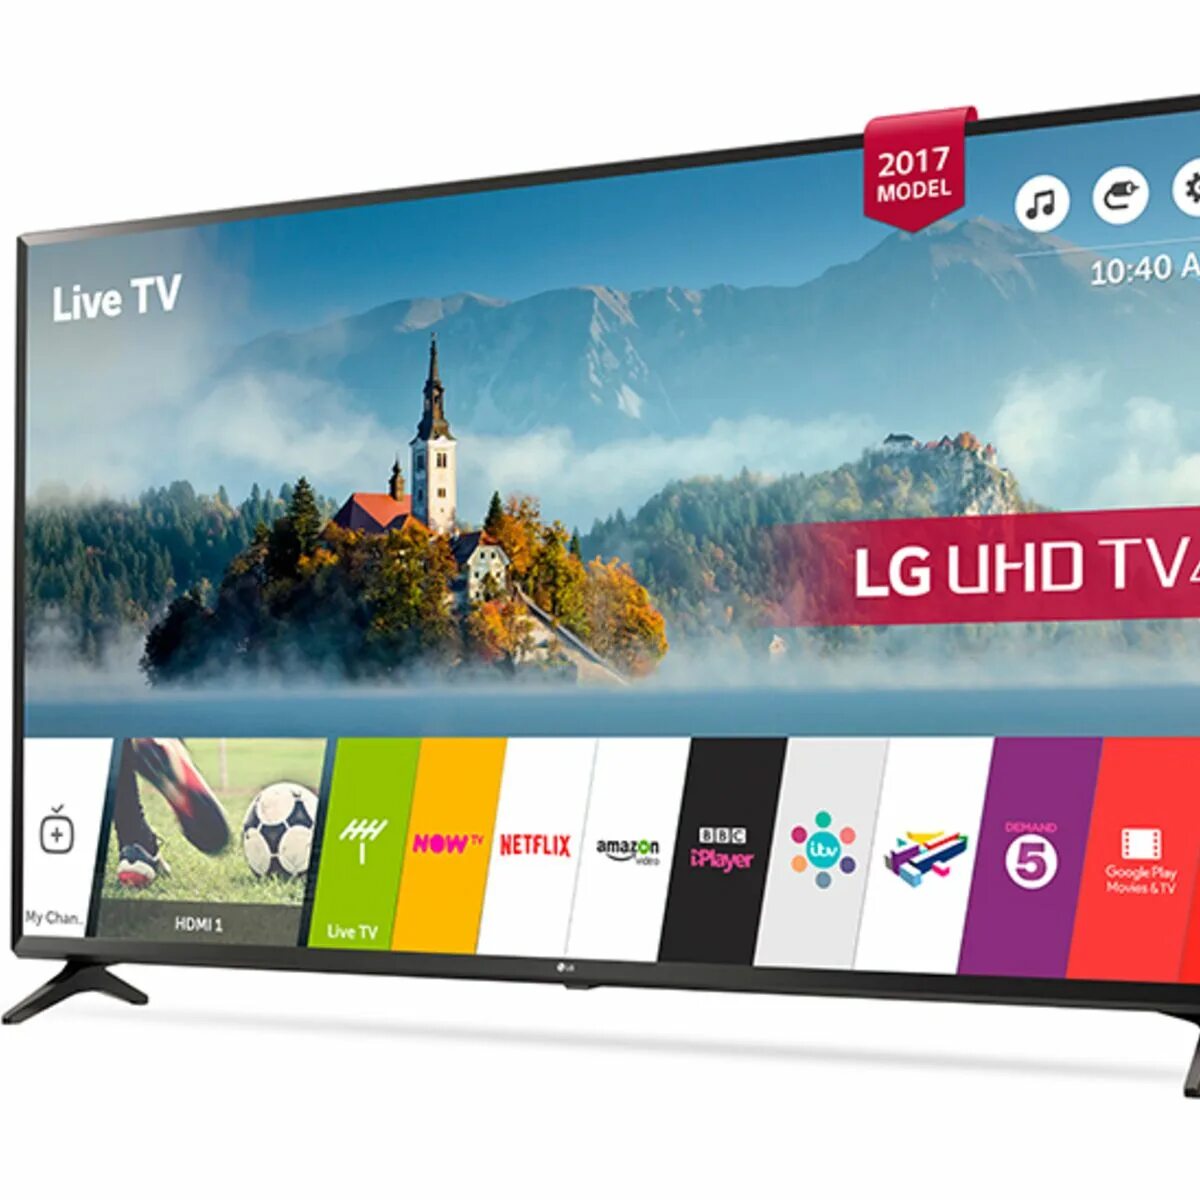 LG Smart TV 43. Телевизор LG 43 дюйма смарт ТВ. Телевизор LG 43lj594v.